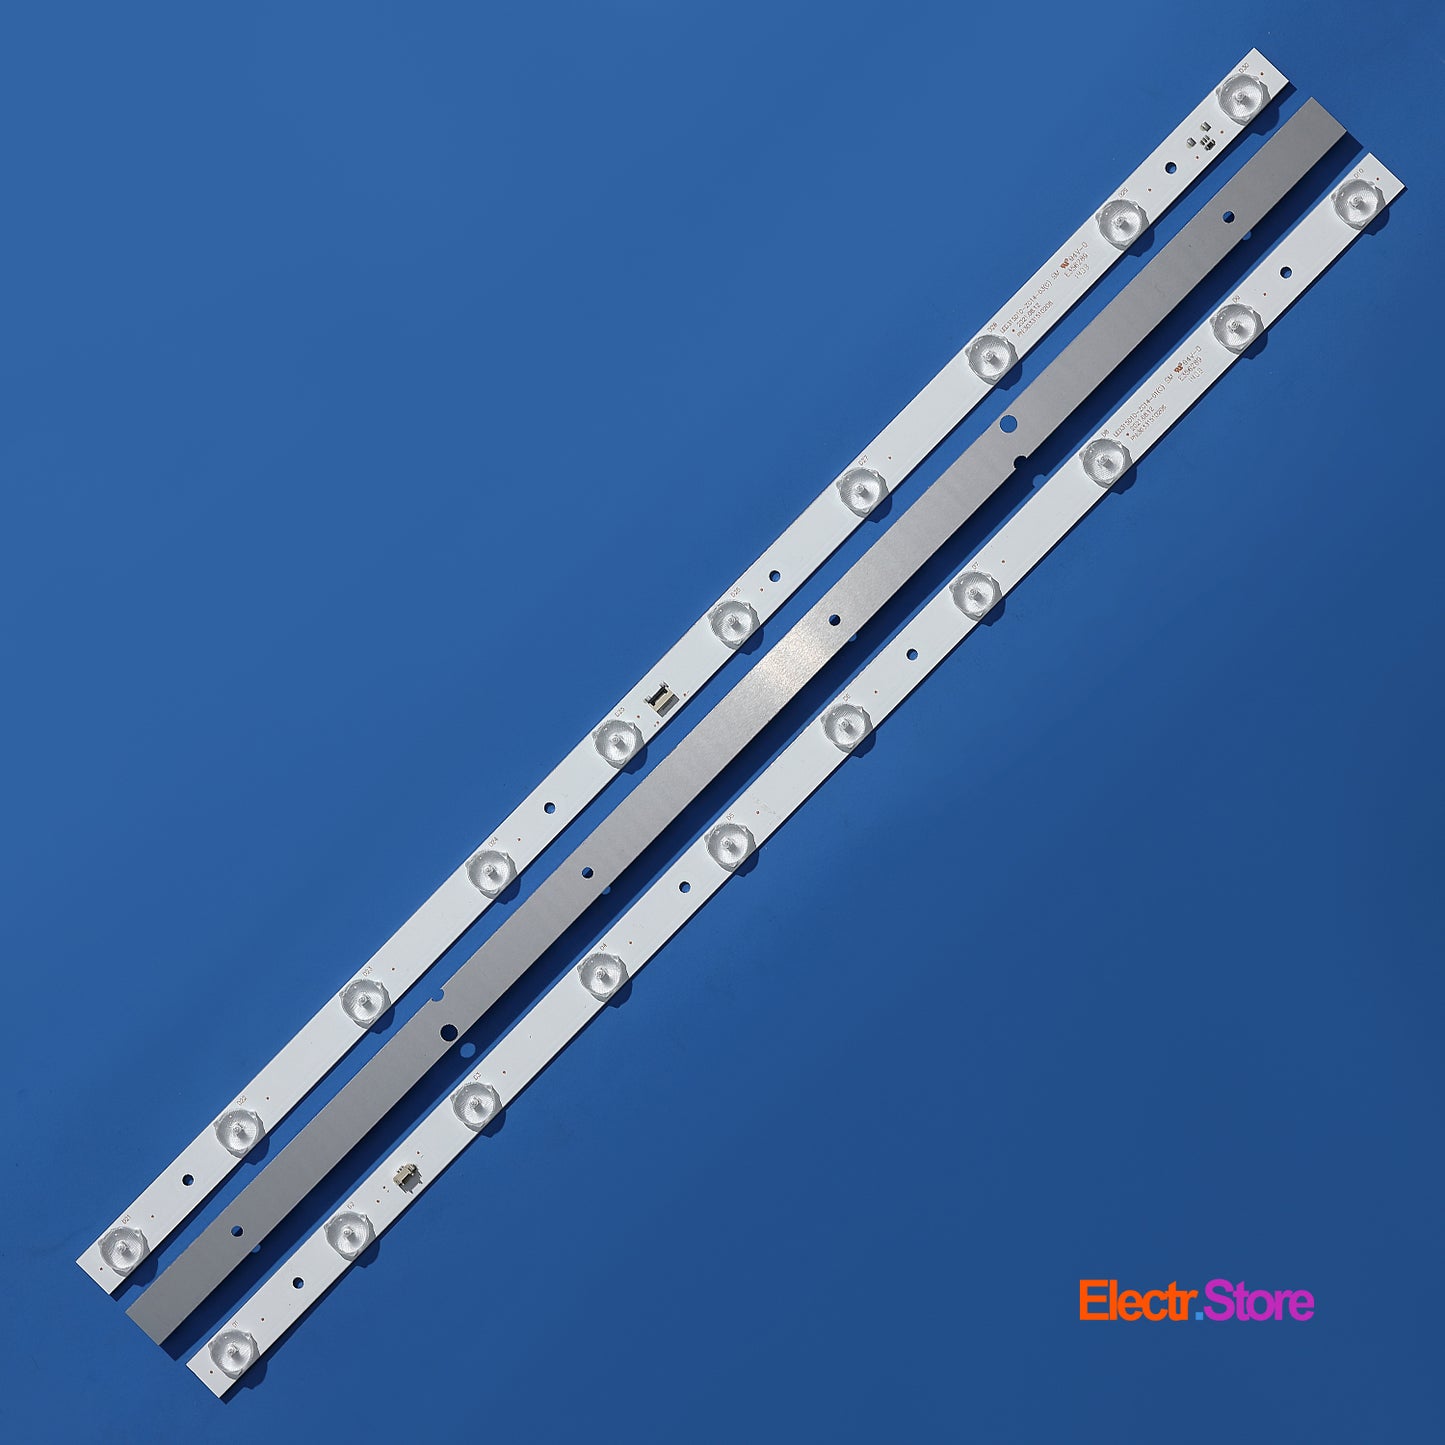 LED Backlight Strip Kits, 30331510211, LED315D10-ZC14-01(C), LED315D10-ZC14-01(D) (3 pcs/kit), for TV 32" 32" Haier JVC LED Backlights LED315D10-ZC14-01(C) Electr.Store